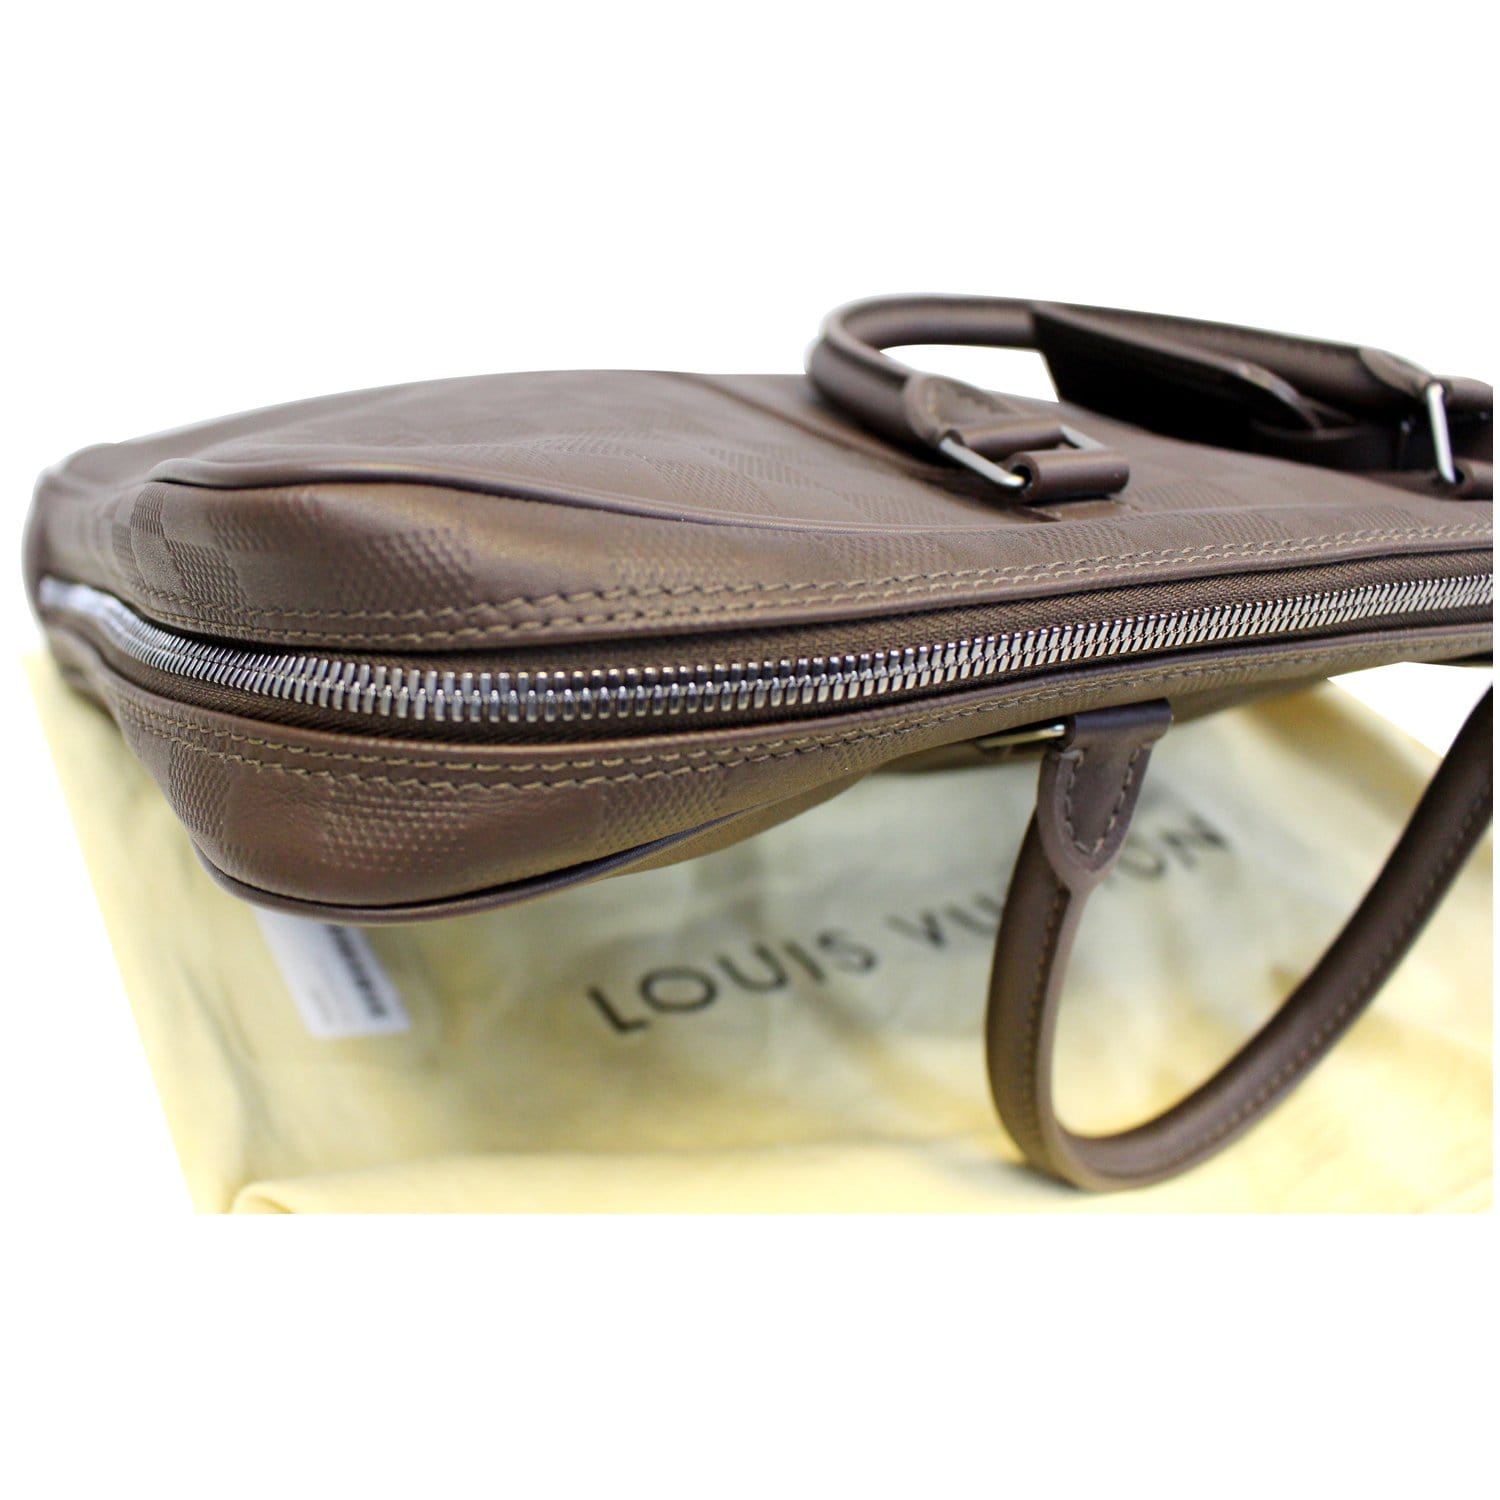 Louis Vuitton Porte Documents Voyage Damier Infini Business Laptop Bag 35%  off retail